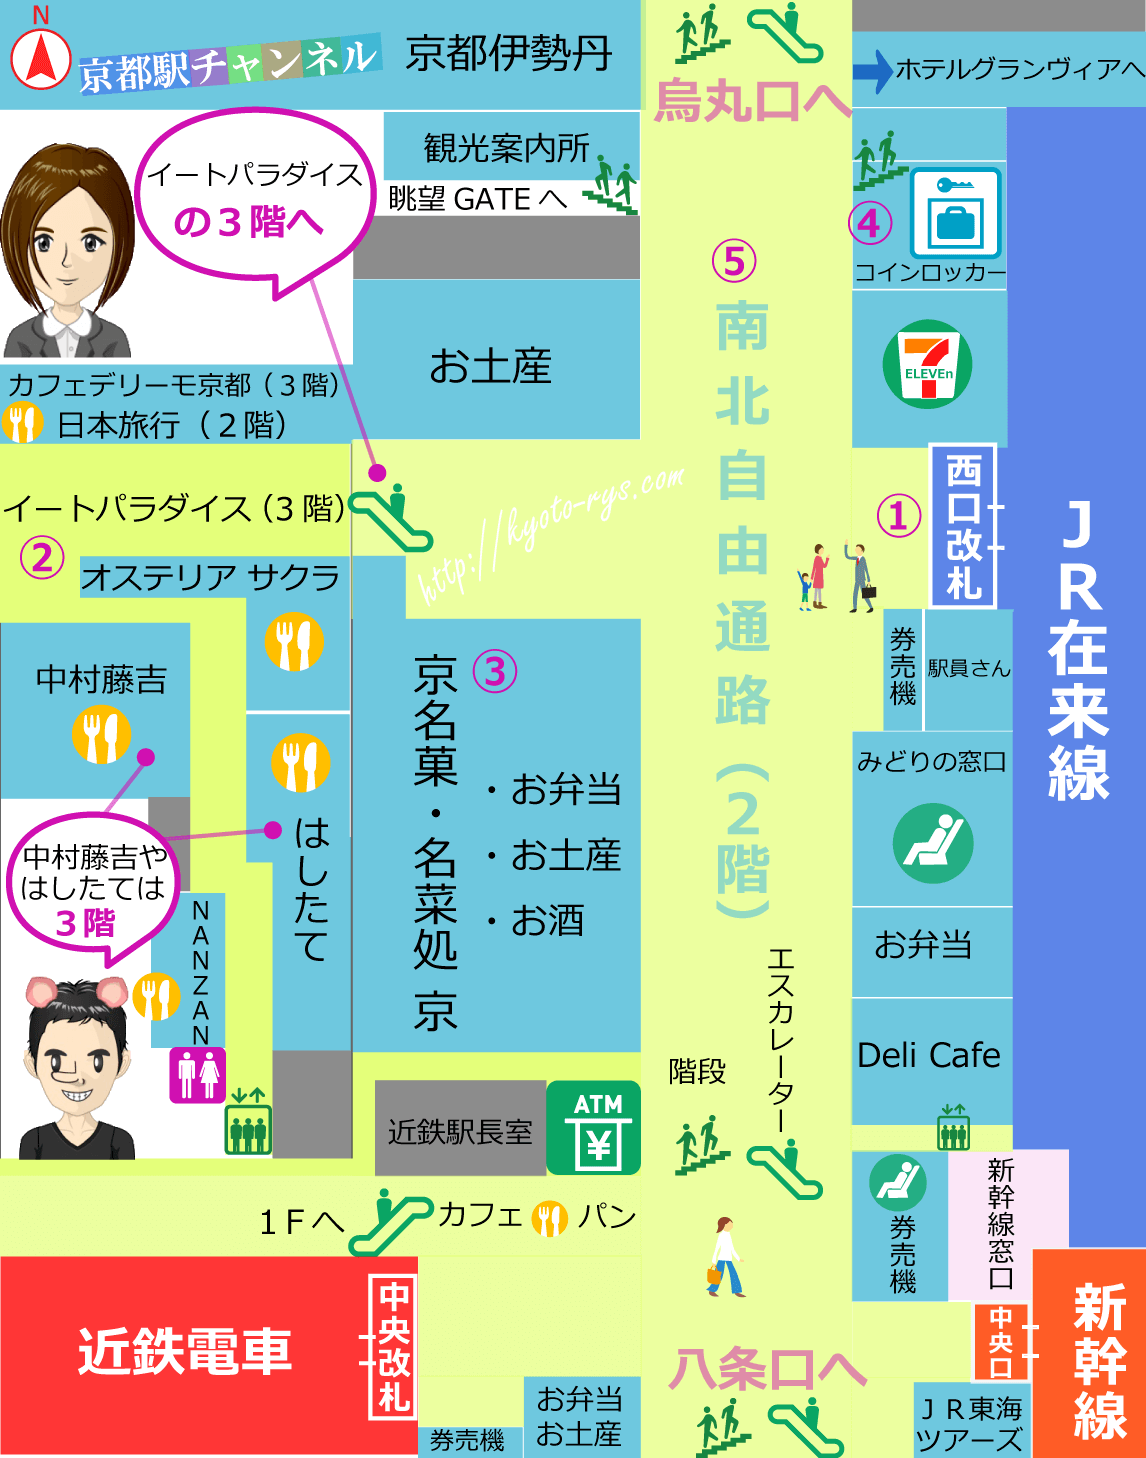 京都駅の西口改札の構内図<